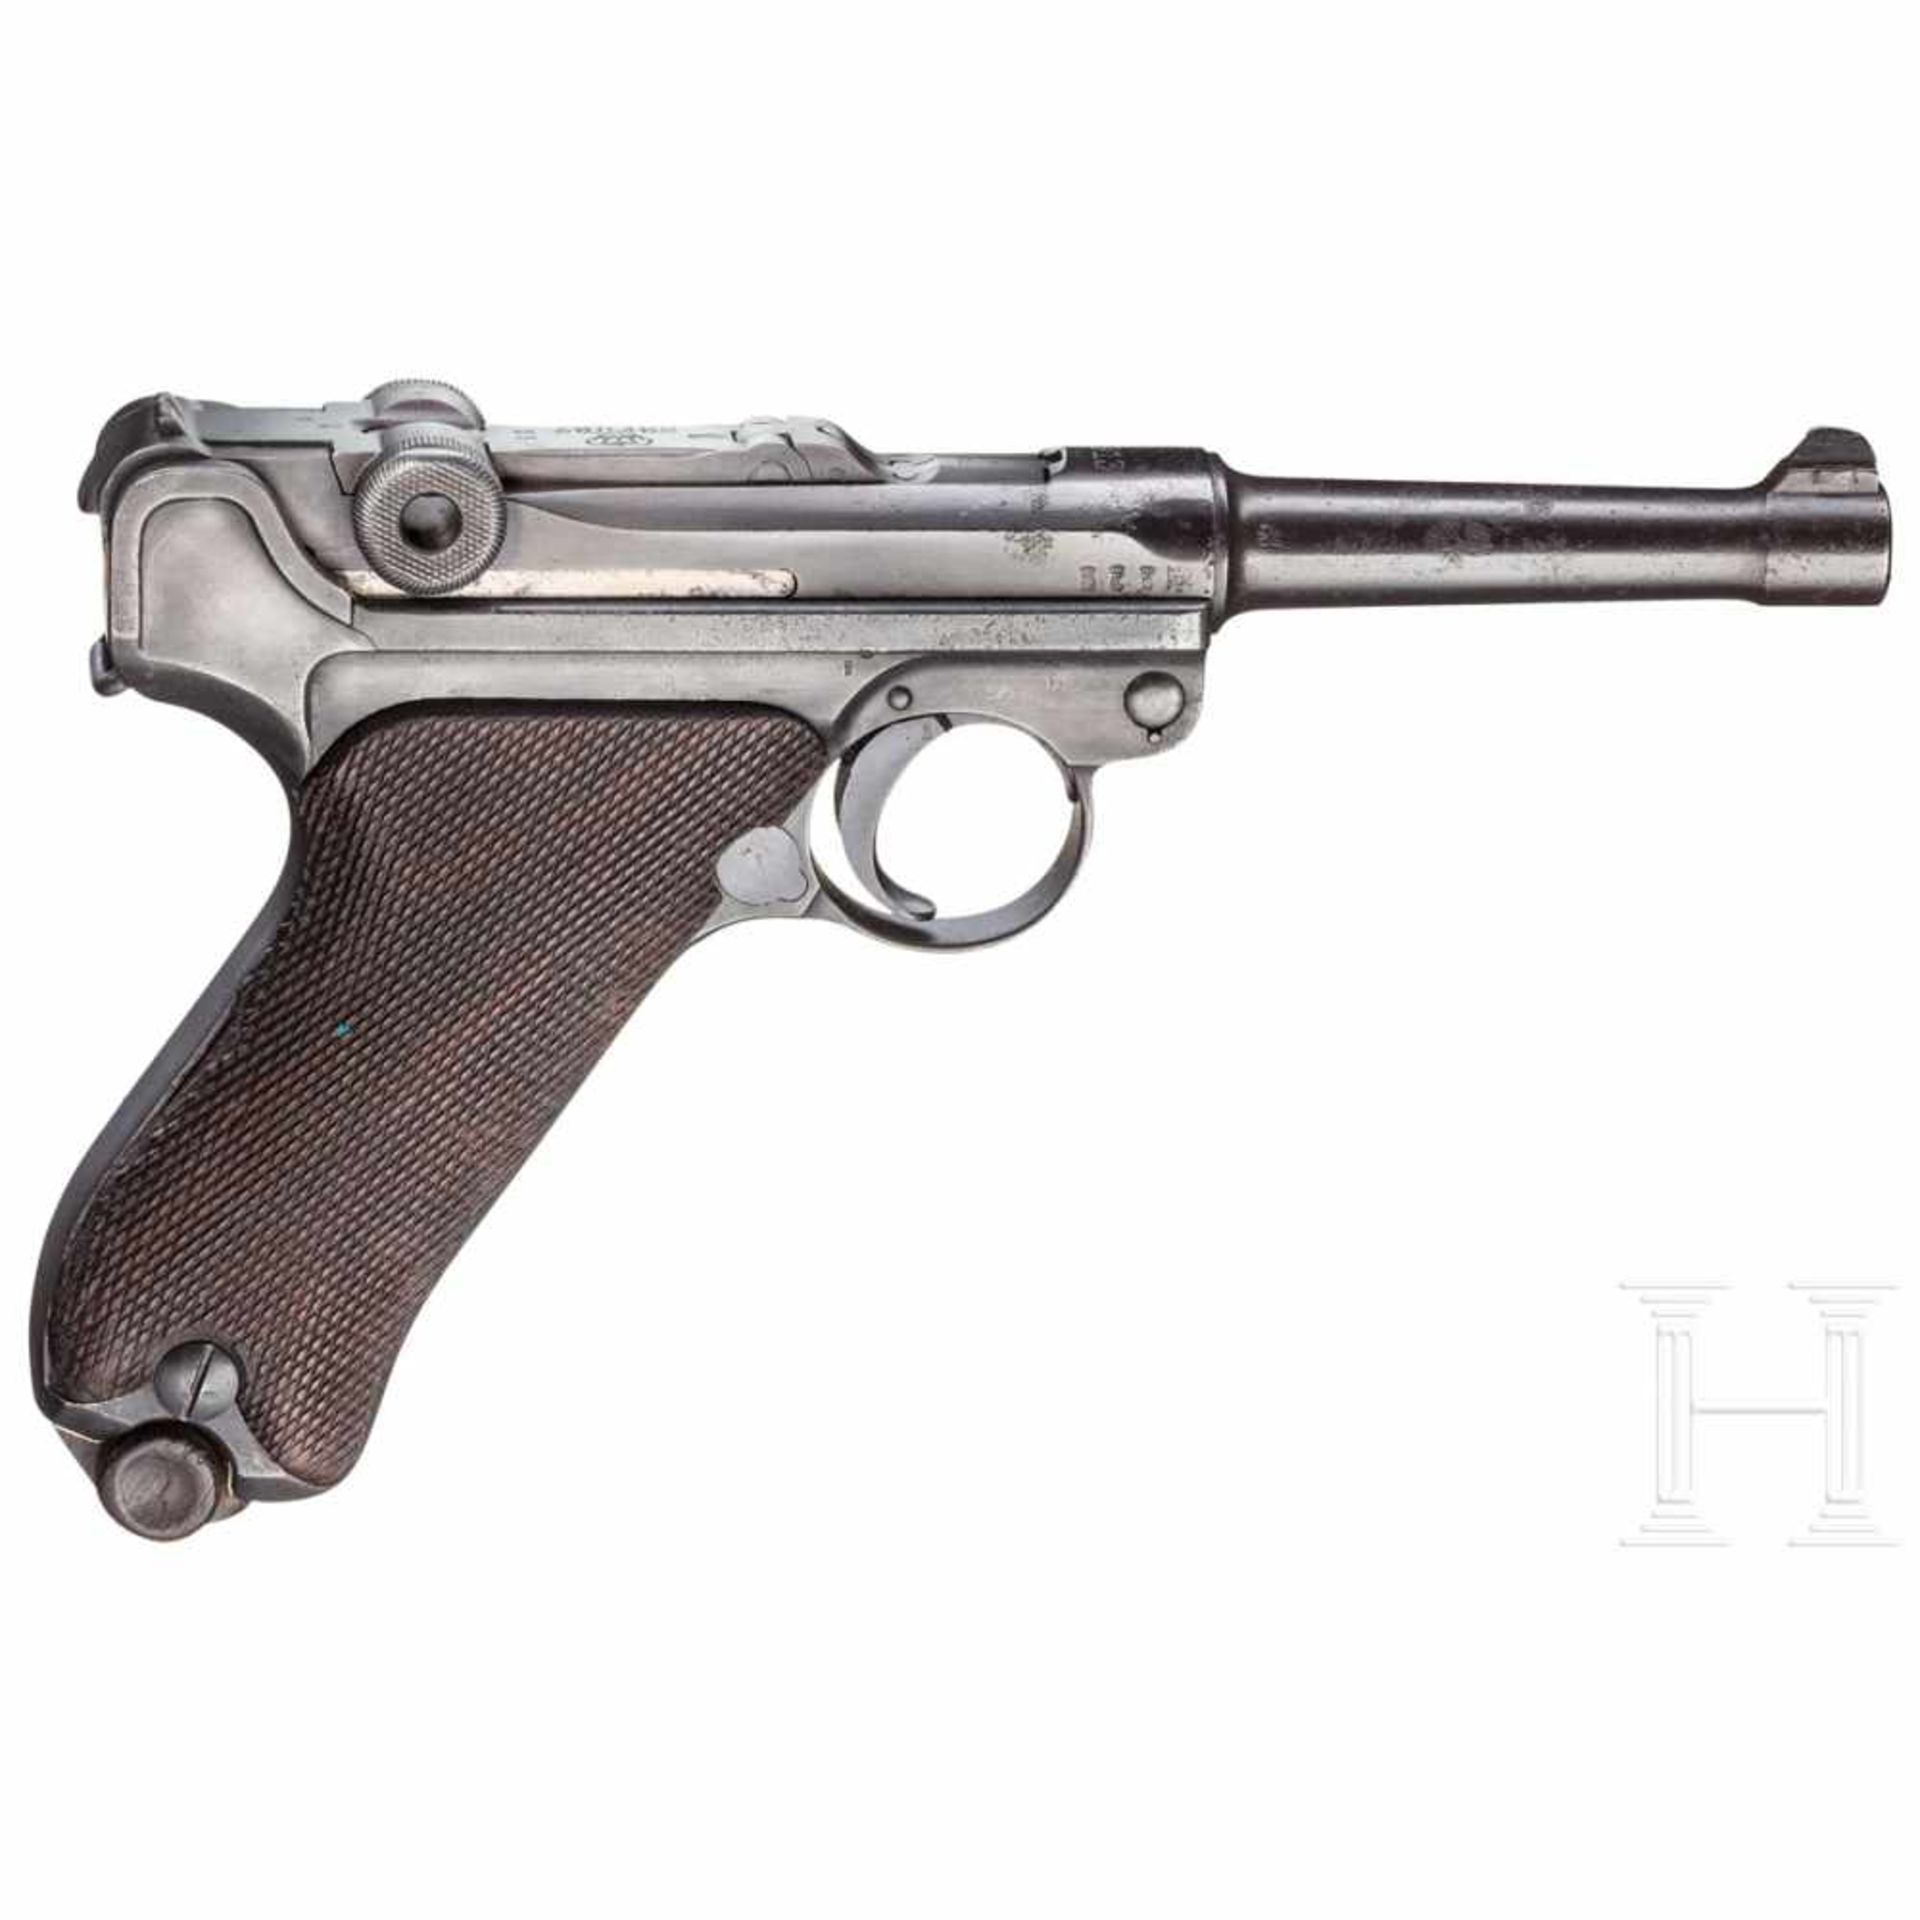 Pistole 08, Erfurt 1913, mit TascheKal. 9 mm Luger, Nr. 1715, Nummerngleich inkl. Schlagbolzen und - Bild 2 aus 3